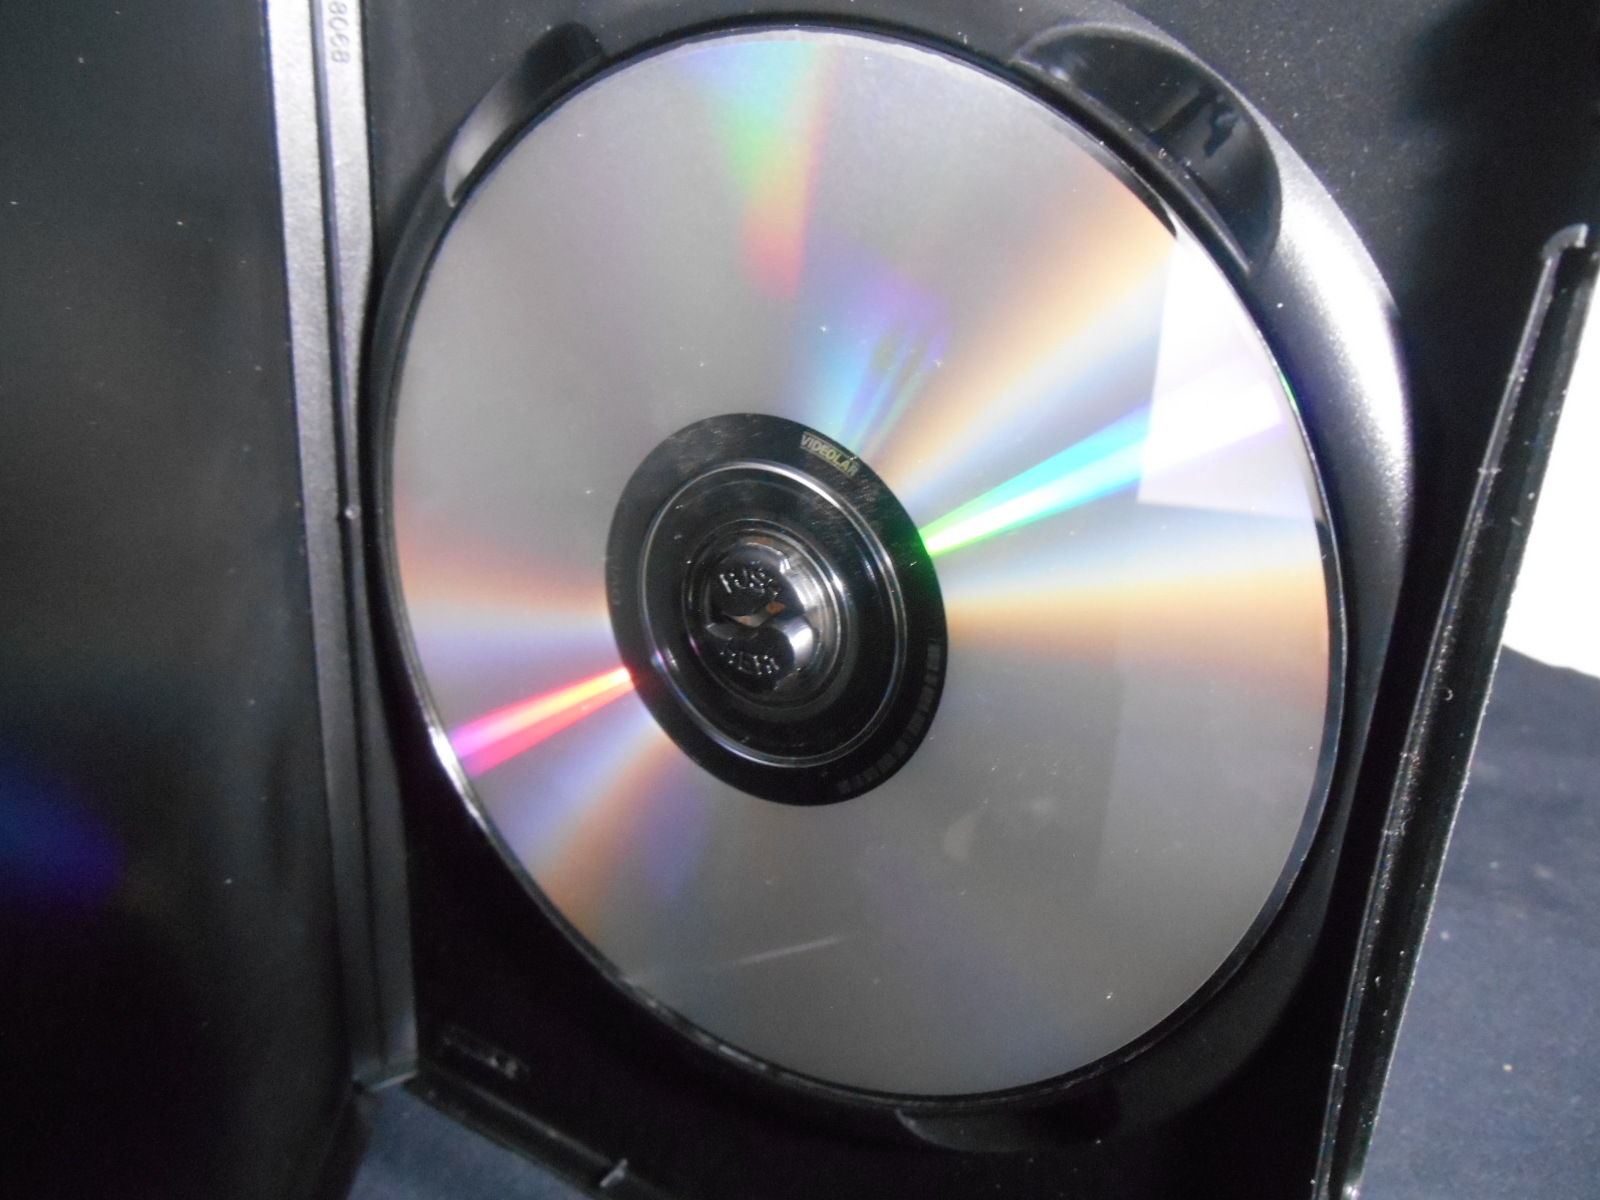 DVD - Jethro Tull - Slipstream